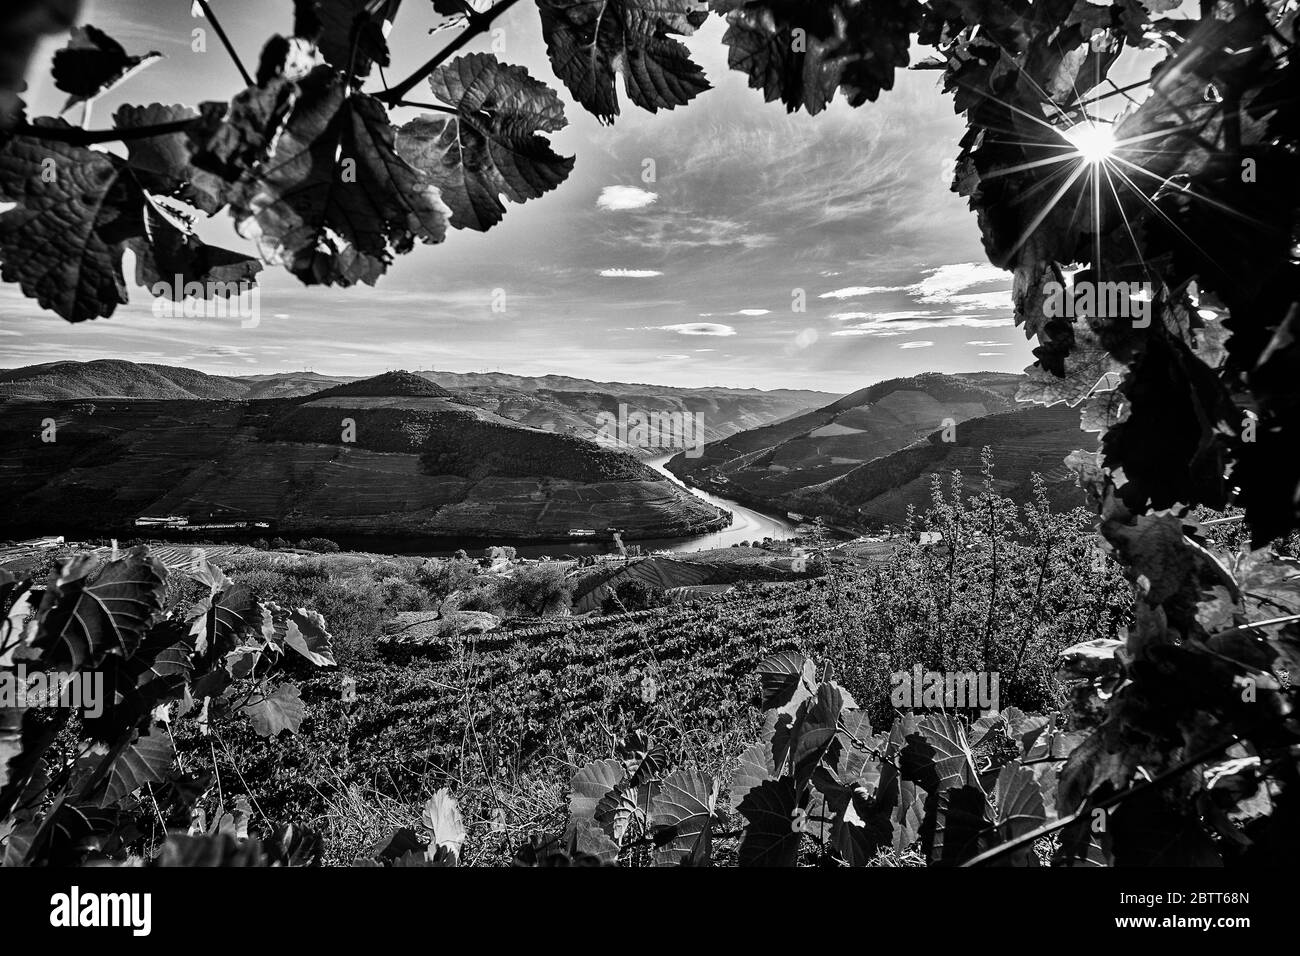 La vallée du Douro, dans le nord du Portugal, est le berceau de Port Wine. La région est connue pour ses vignes, ses amandiers et ses oliviers. Banque D'Images